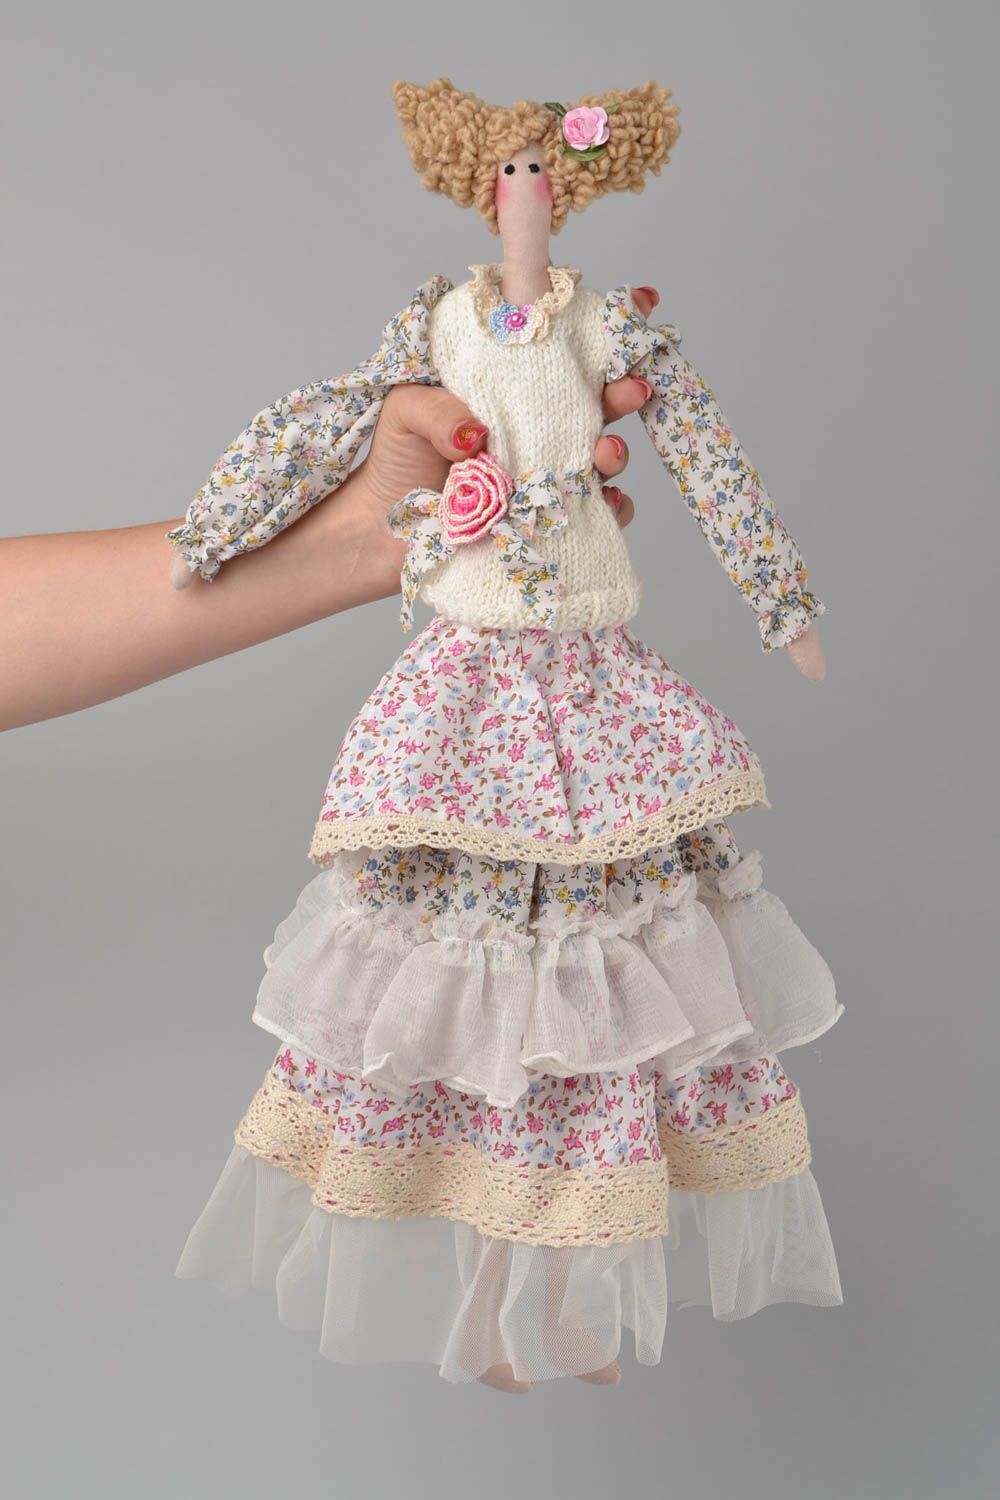 Игрушка кукла из ткани небольшая в платье красивая светлая ручной работы фото 2